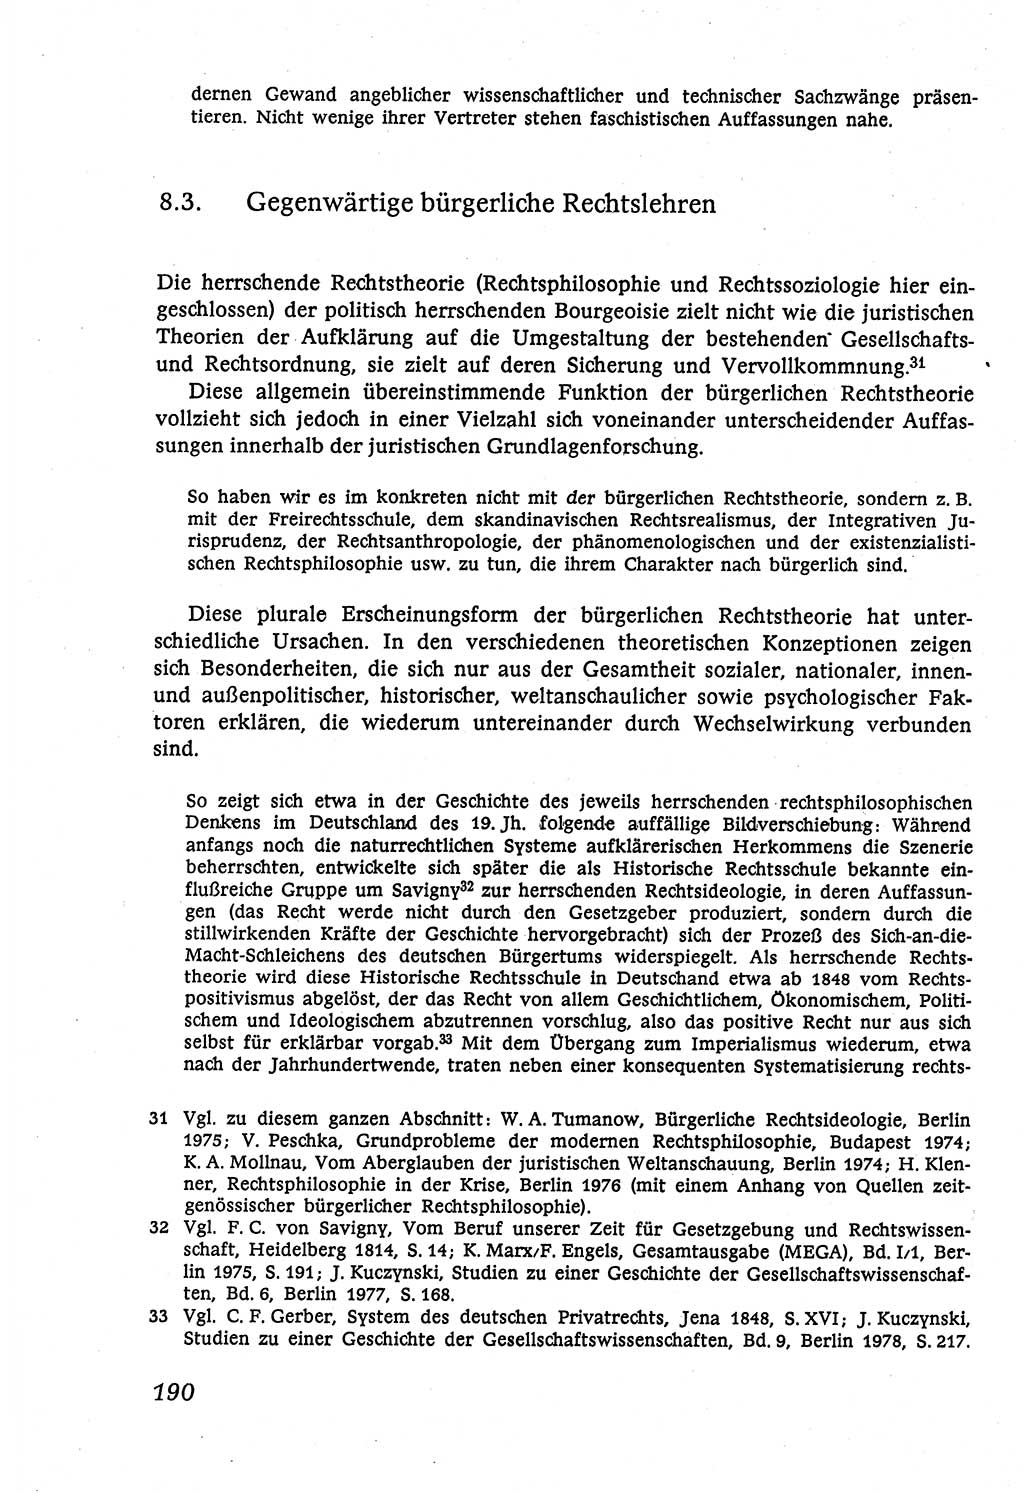 Marxistisch-leninistische (ML) Staats- und Rechtstheorie [Deutsche Demokratische Republik (DDR)], Lehrbuch 1980, Seite 190 (ML St.-R.-Th. DDR Lb. 1980, S. 190)